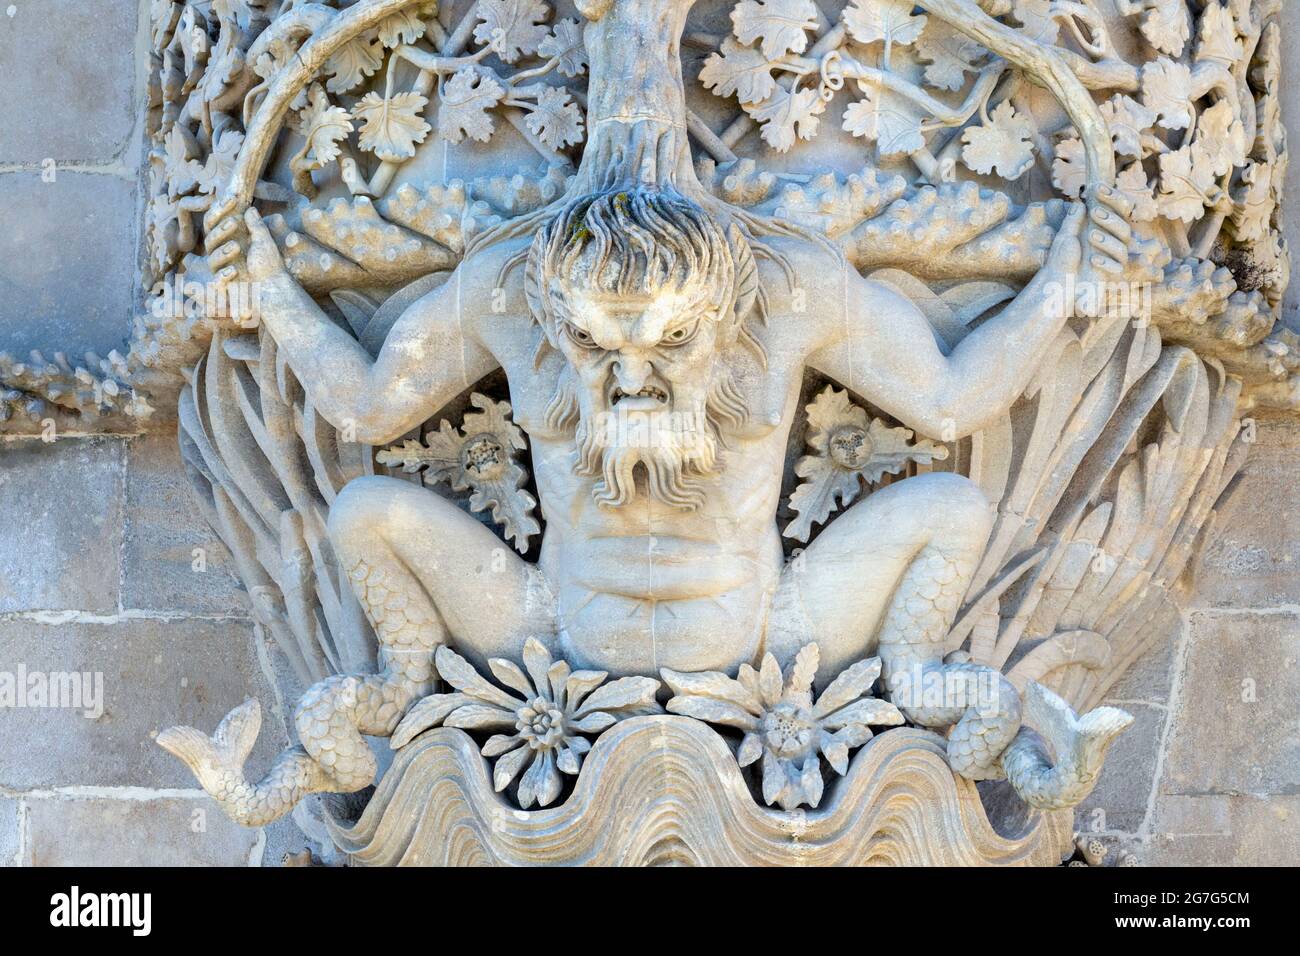 Der Pena-Nationalpalast, Sintra, Bezirk Lissabon, Portugal. Die Figur des griechischen gottes des Meeres Triton über dem Triton-Tor. Der romantische Stil Stockfoto